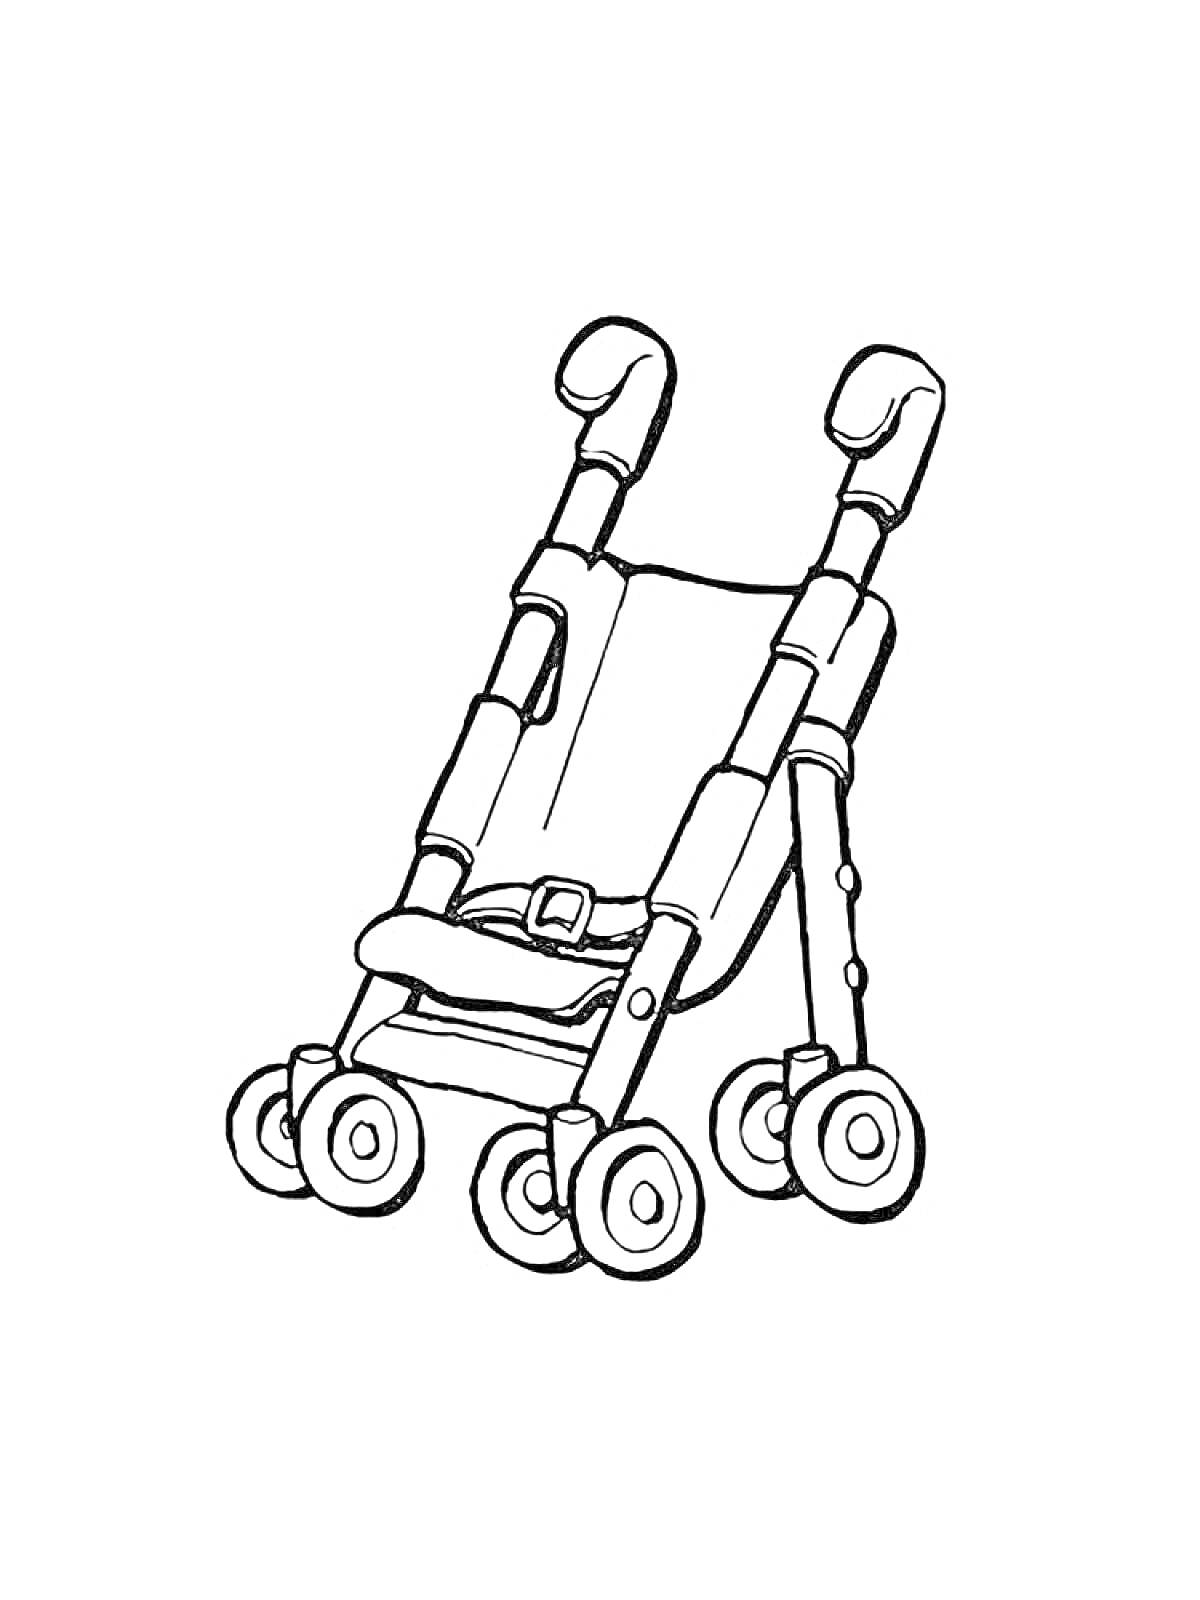 Раскраска Детская прогулочная коляска с ручками и ремнем безопасности